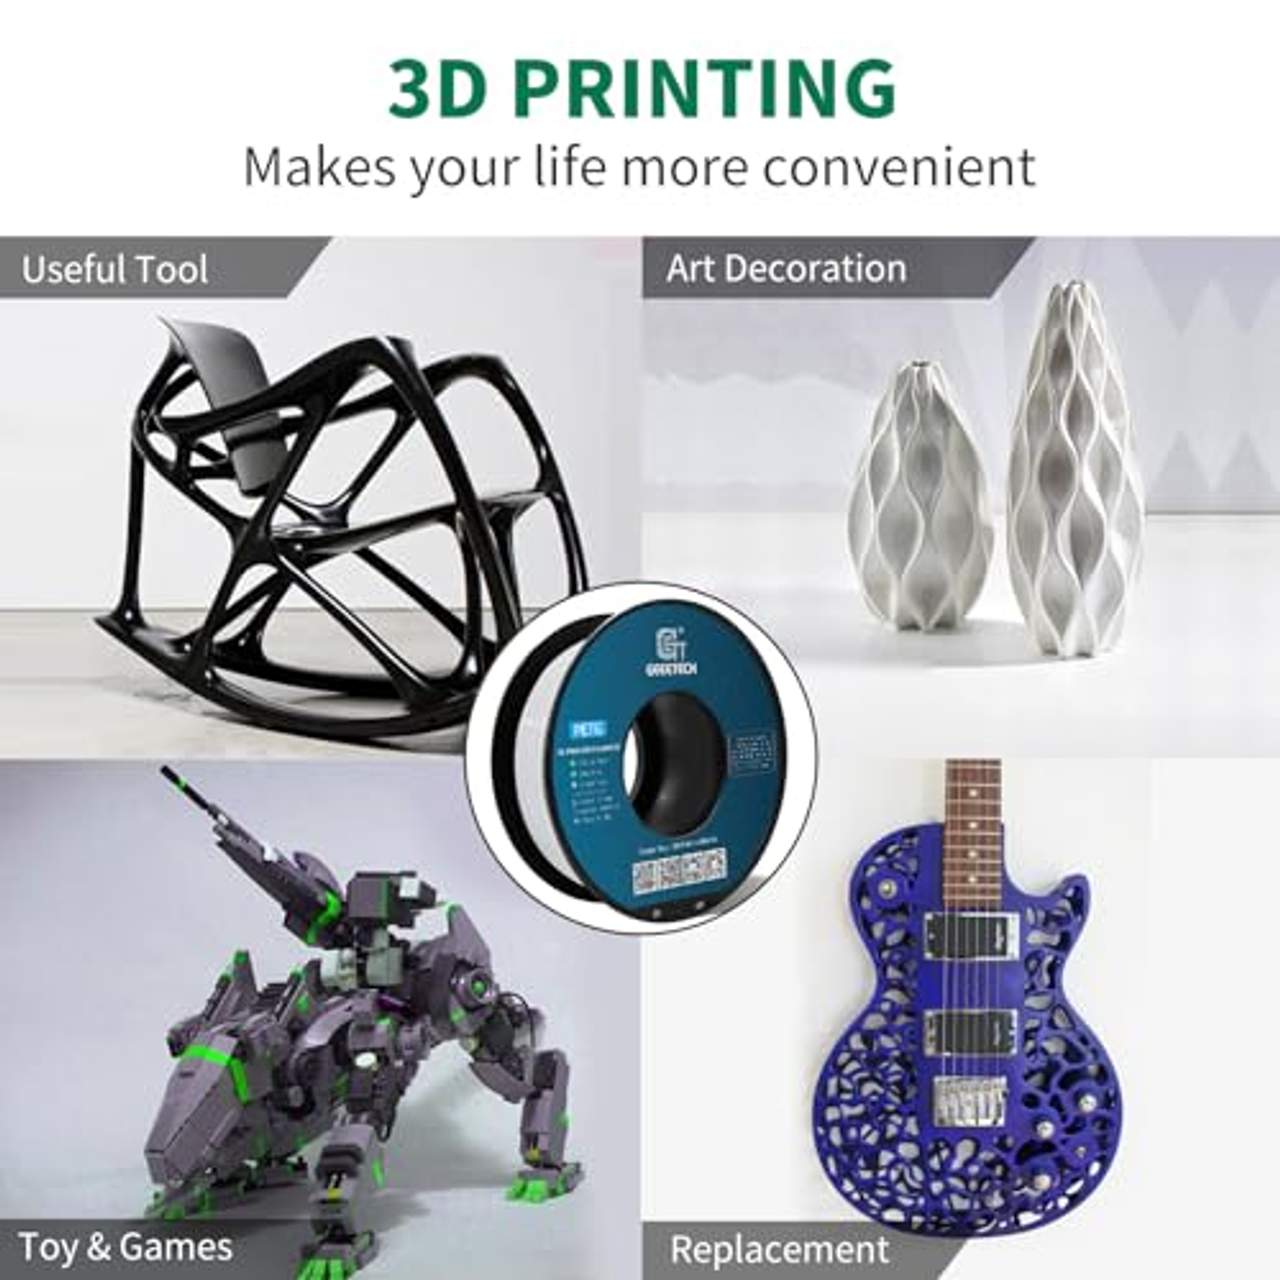 GEEETECH Petg Filament für 3D-Drucker 1,75 mm weiß